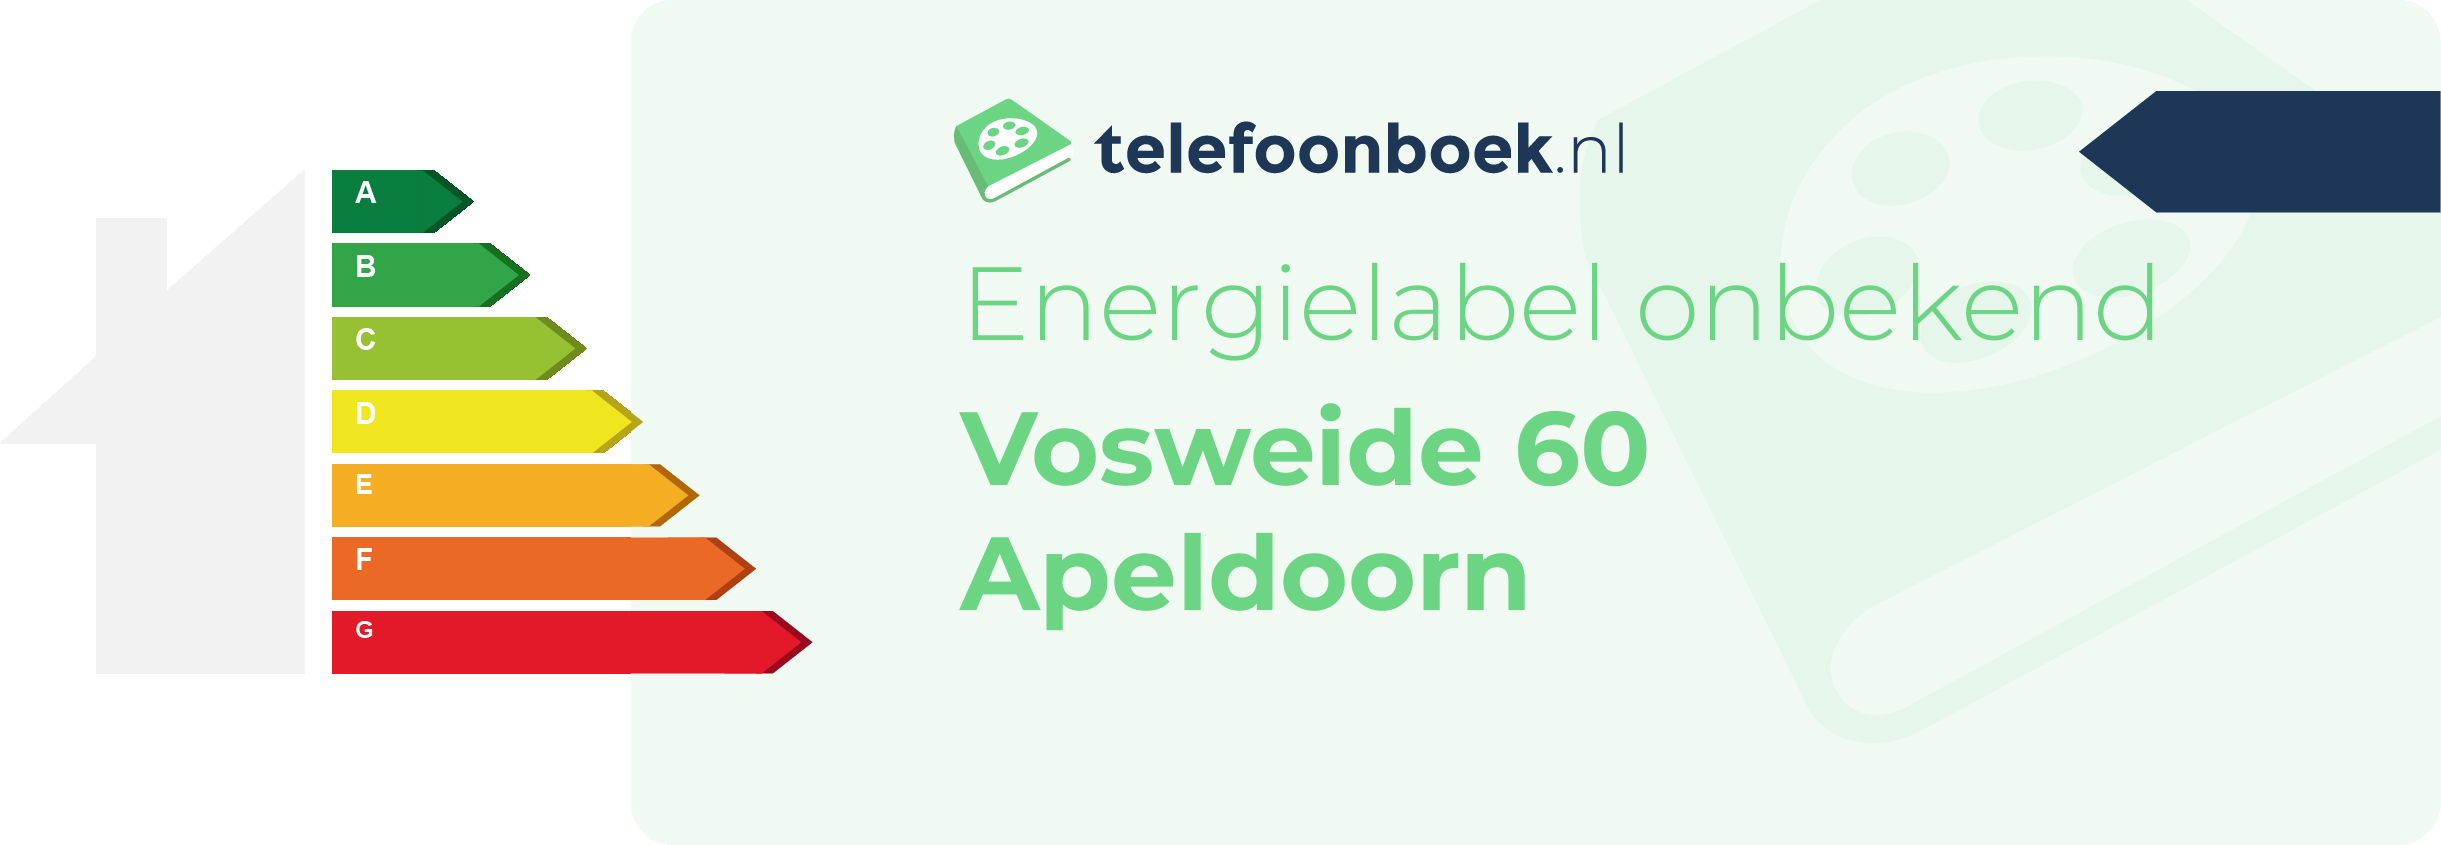 Energielabel Vosweide 60 Apeldoorn